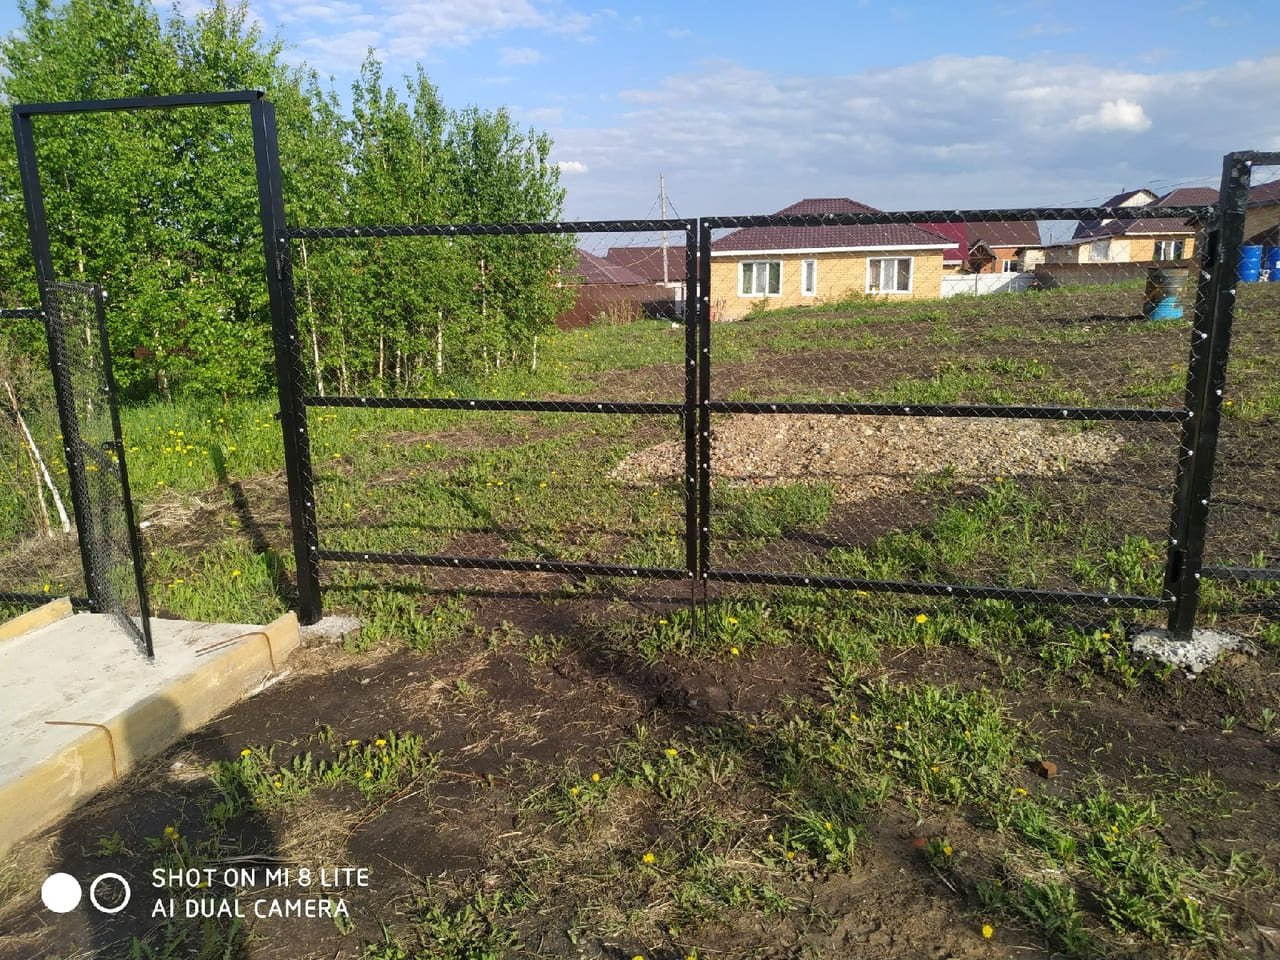 Забор из сетки рабицы в Томске